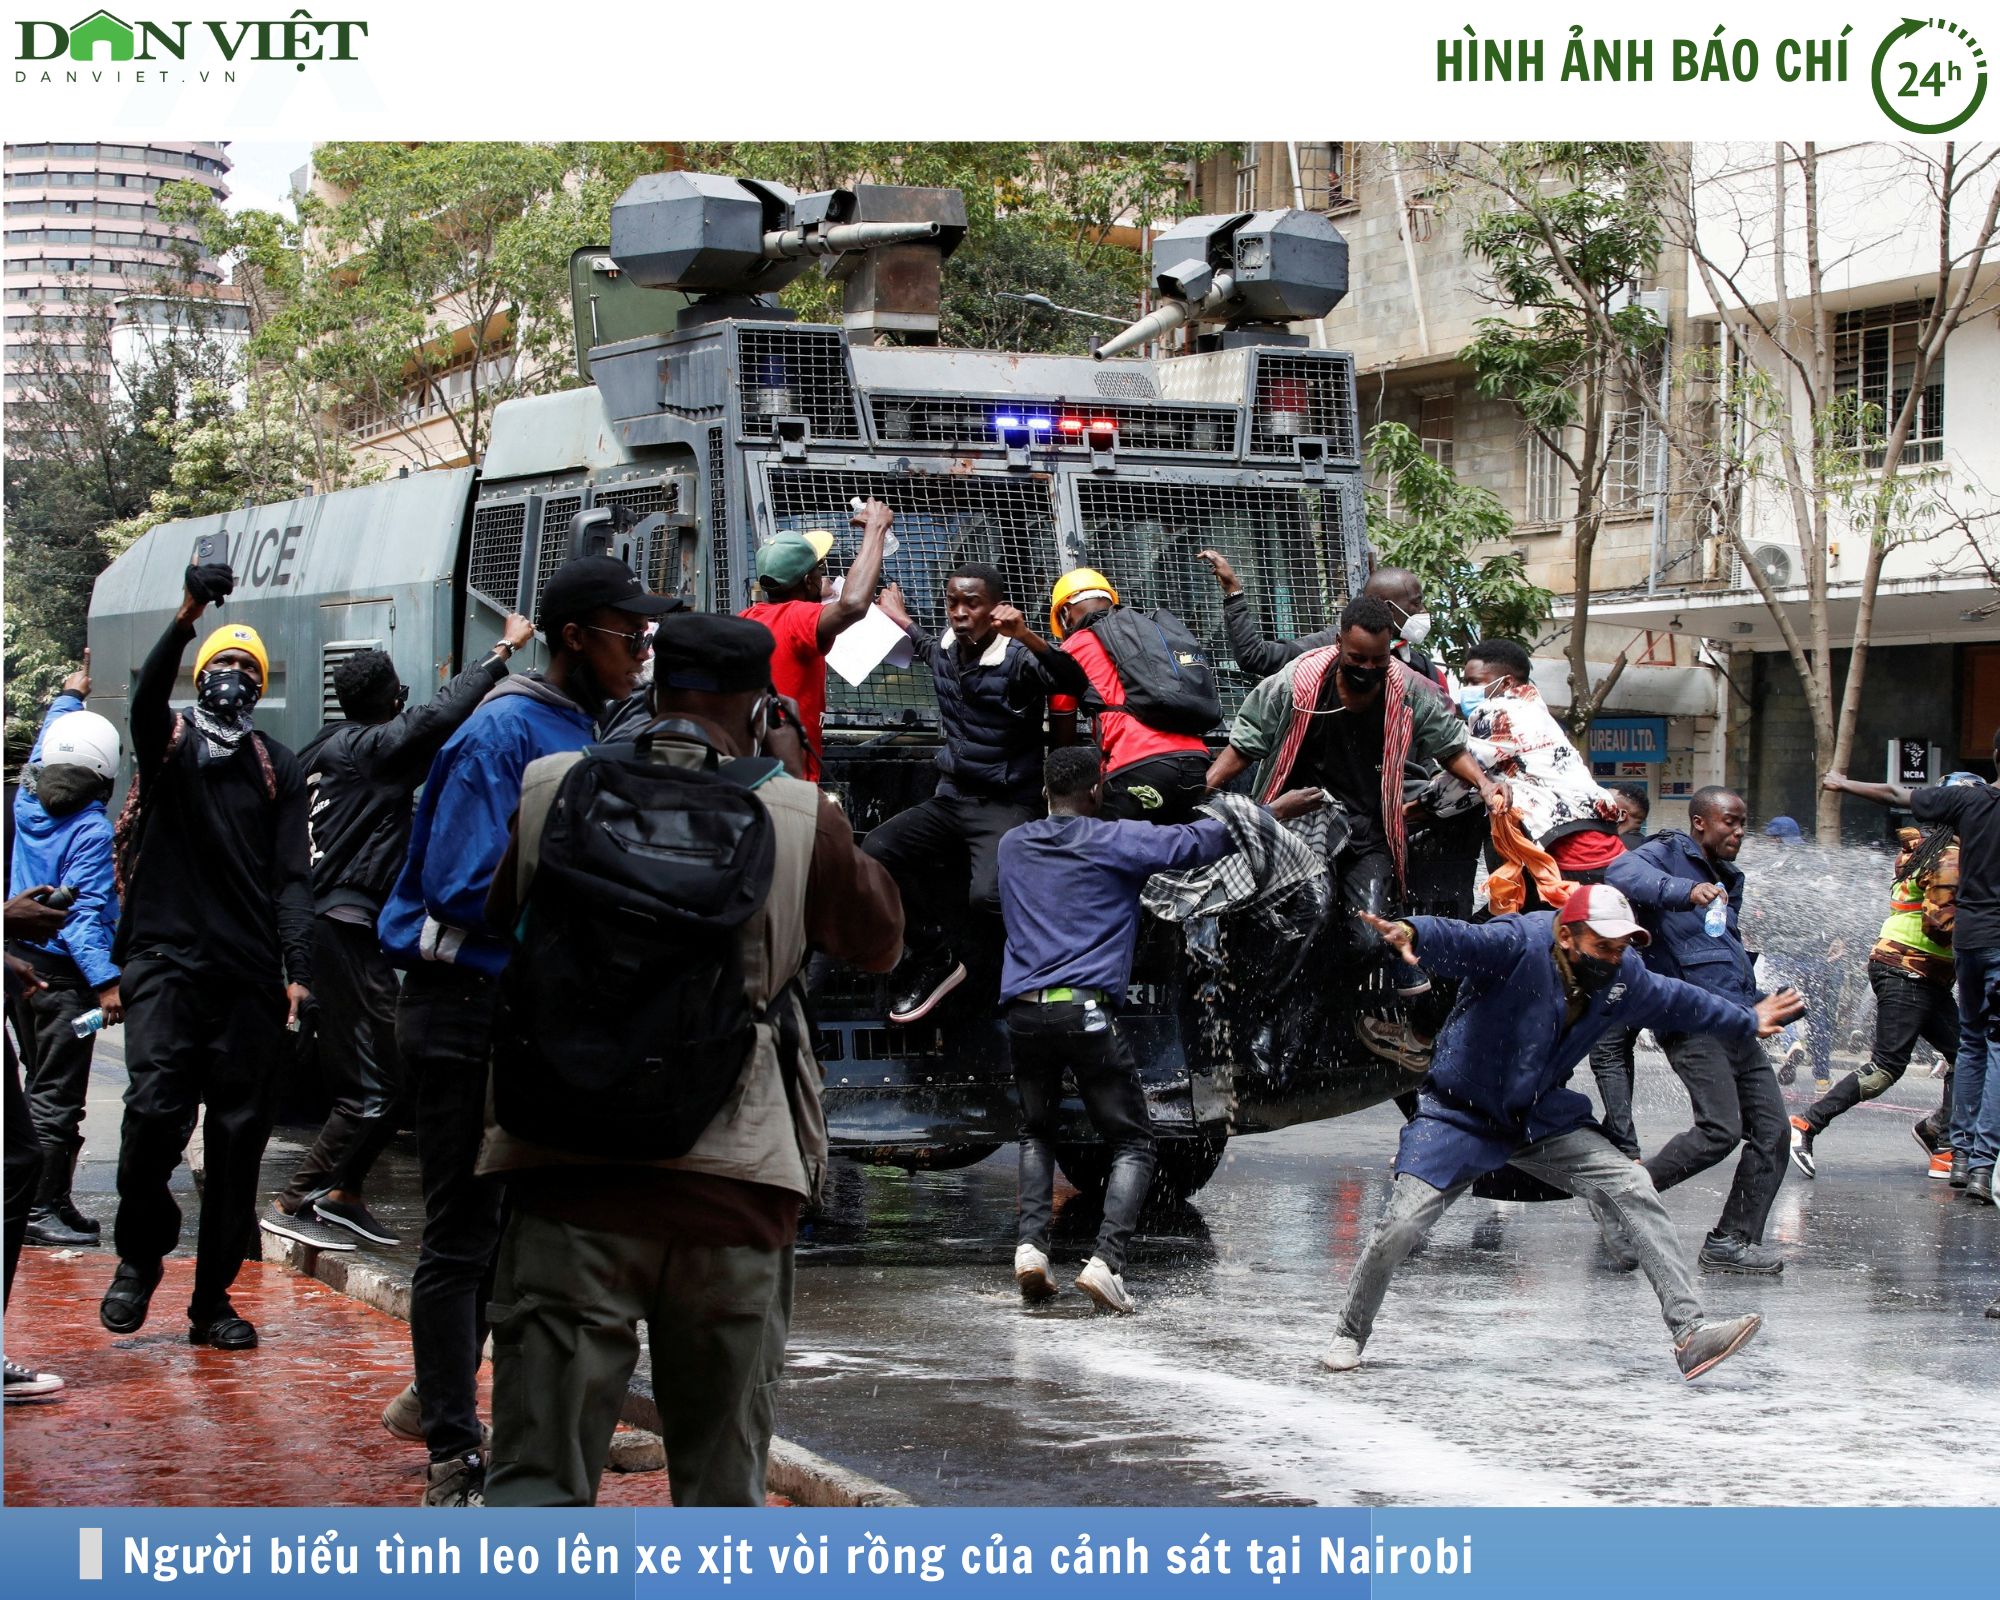 Hình ảnh báo chí 24h: Người biểu tình leo lên xe xịt vòi rồng, đốt phá nhà quốc hội ở Kenya- Ảnh 1.